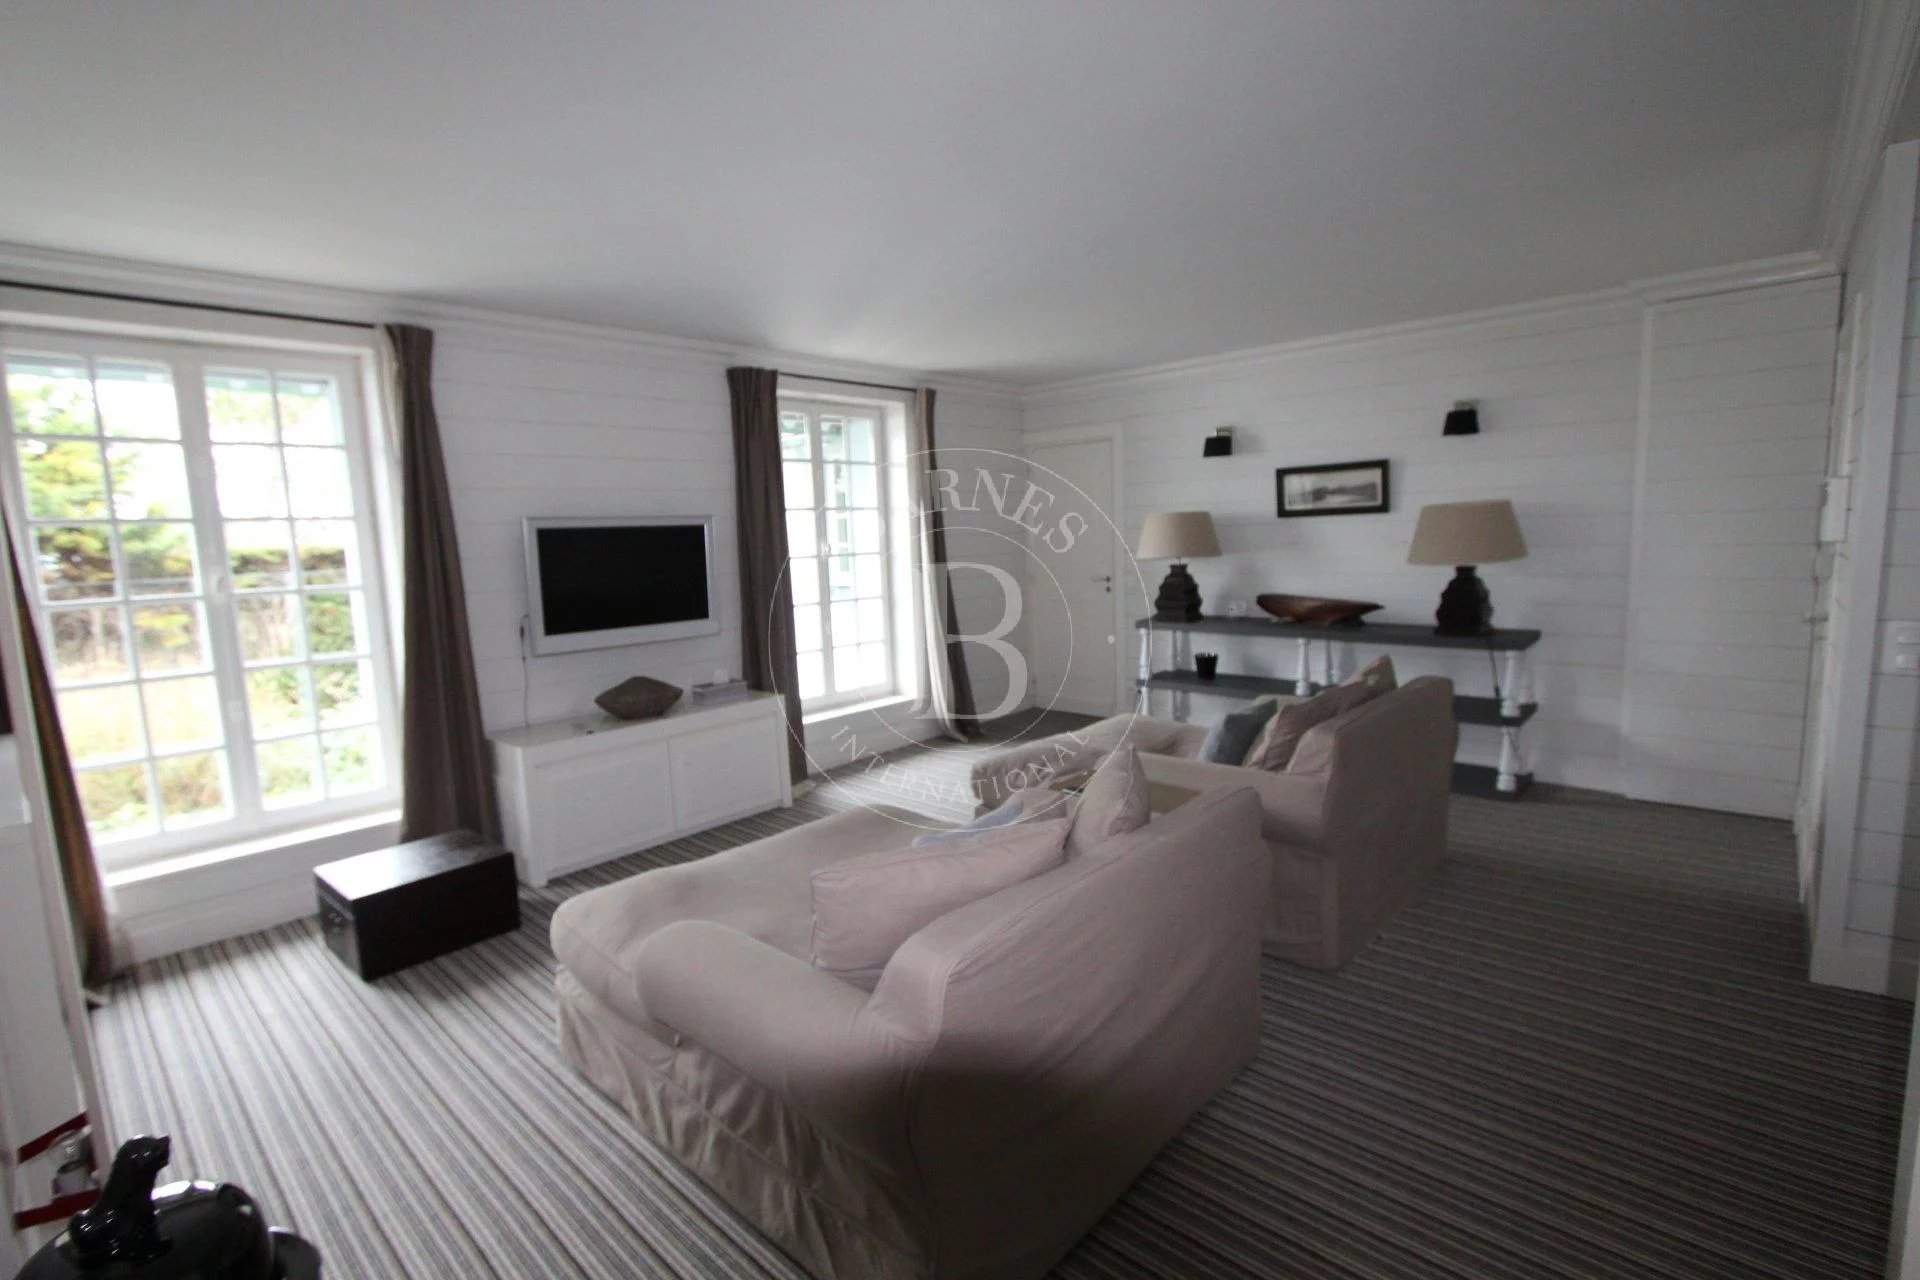 Proche Deauville - Propriété d'exception - 7 chambres - Piscine - accès direct plage picture 18